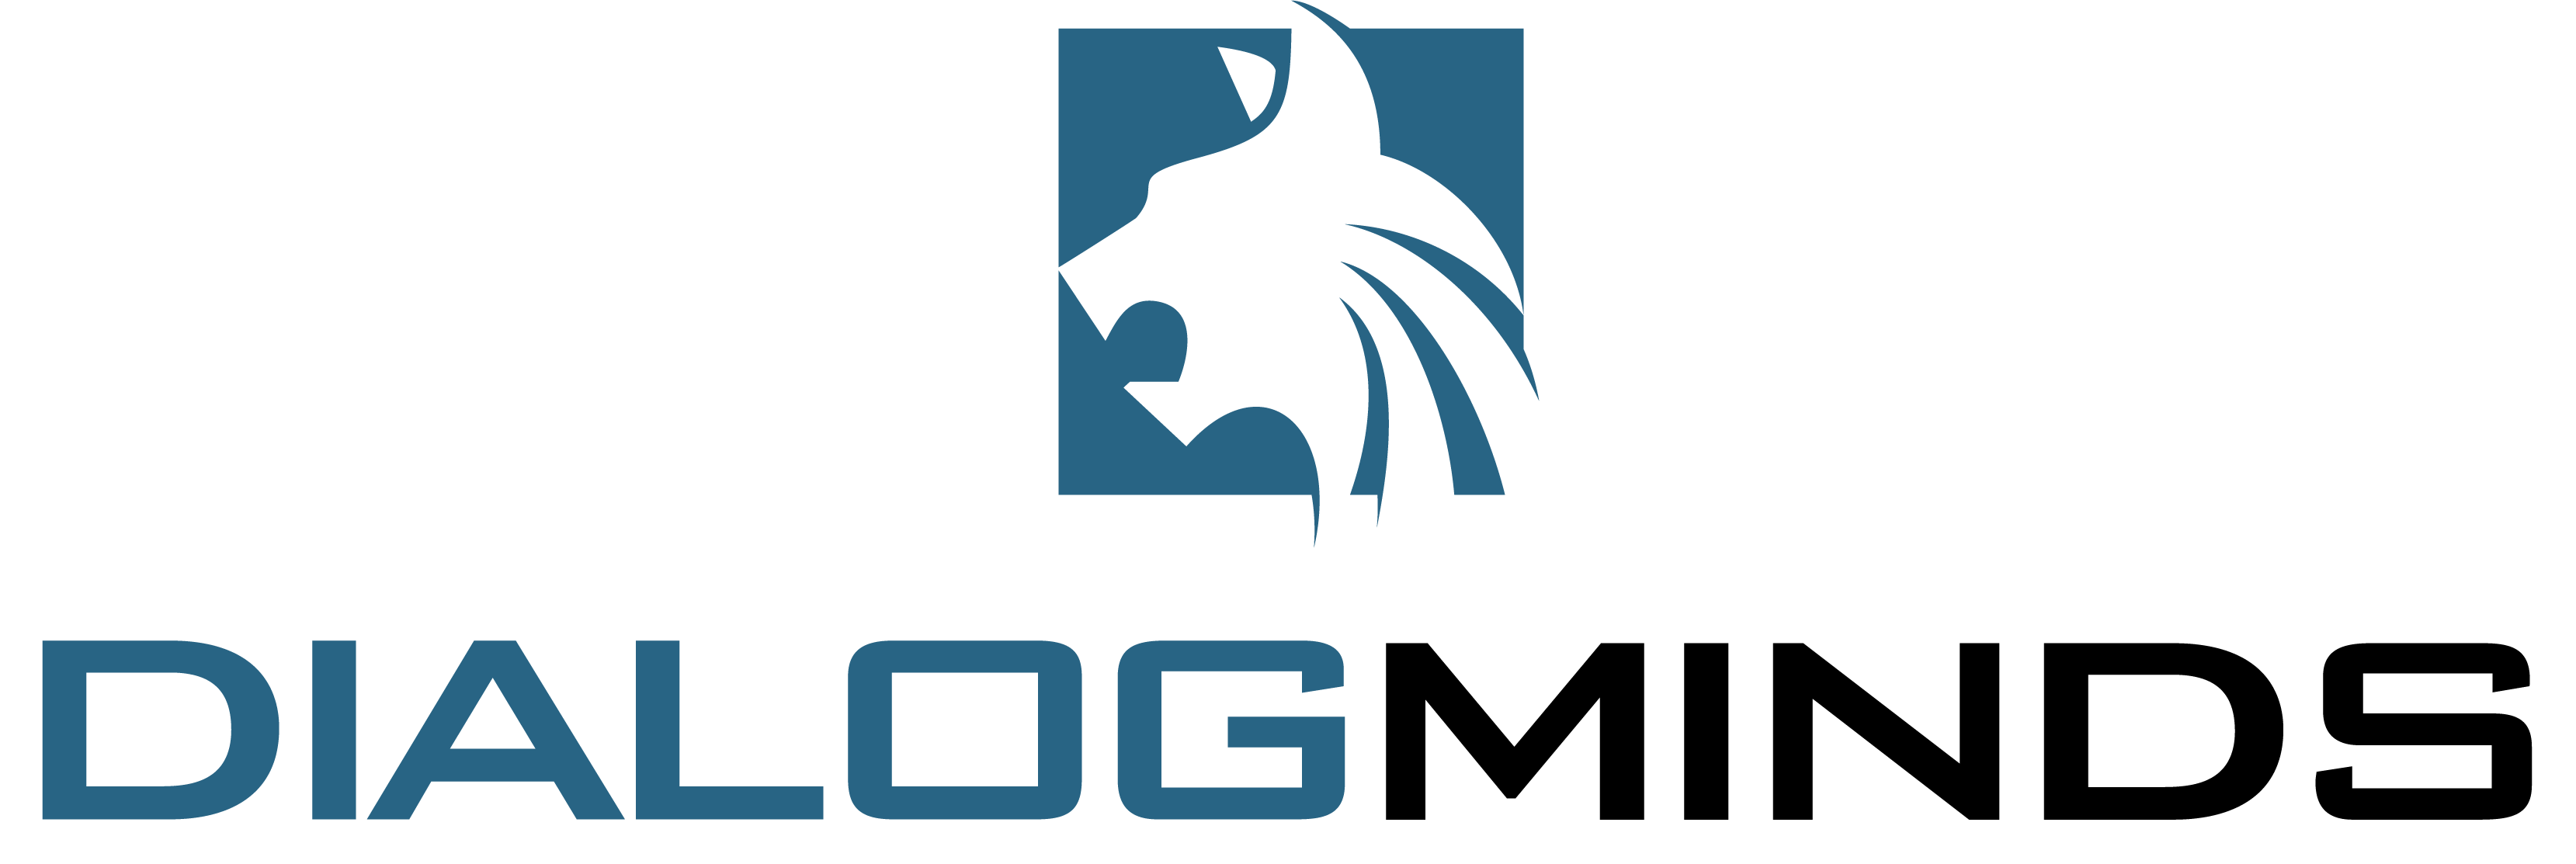 Logo Dialogminds